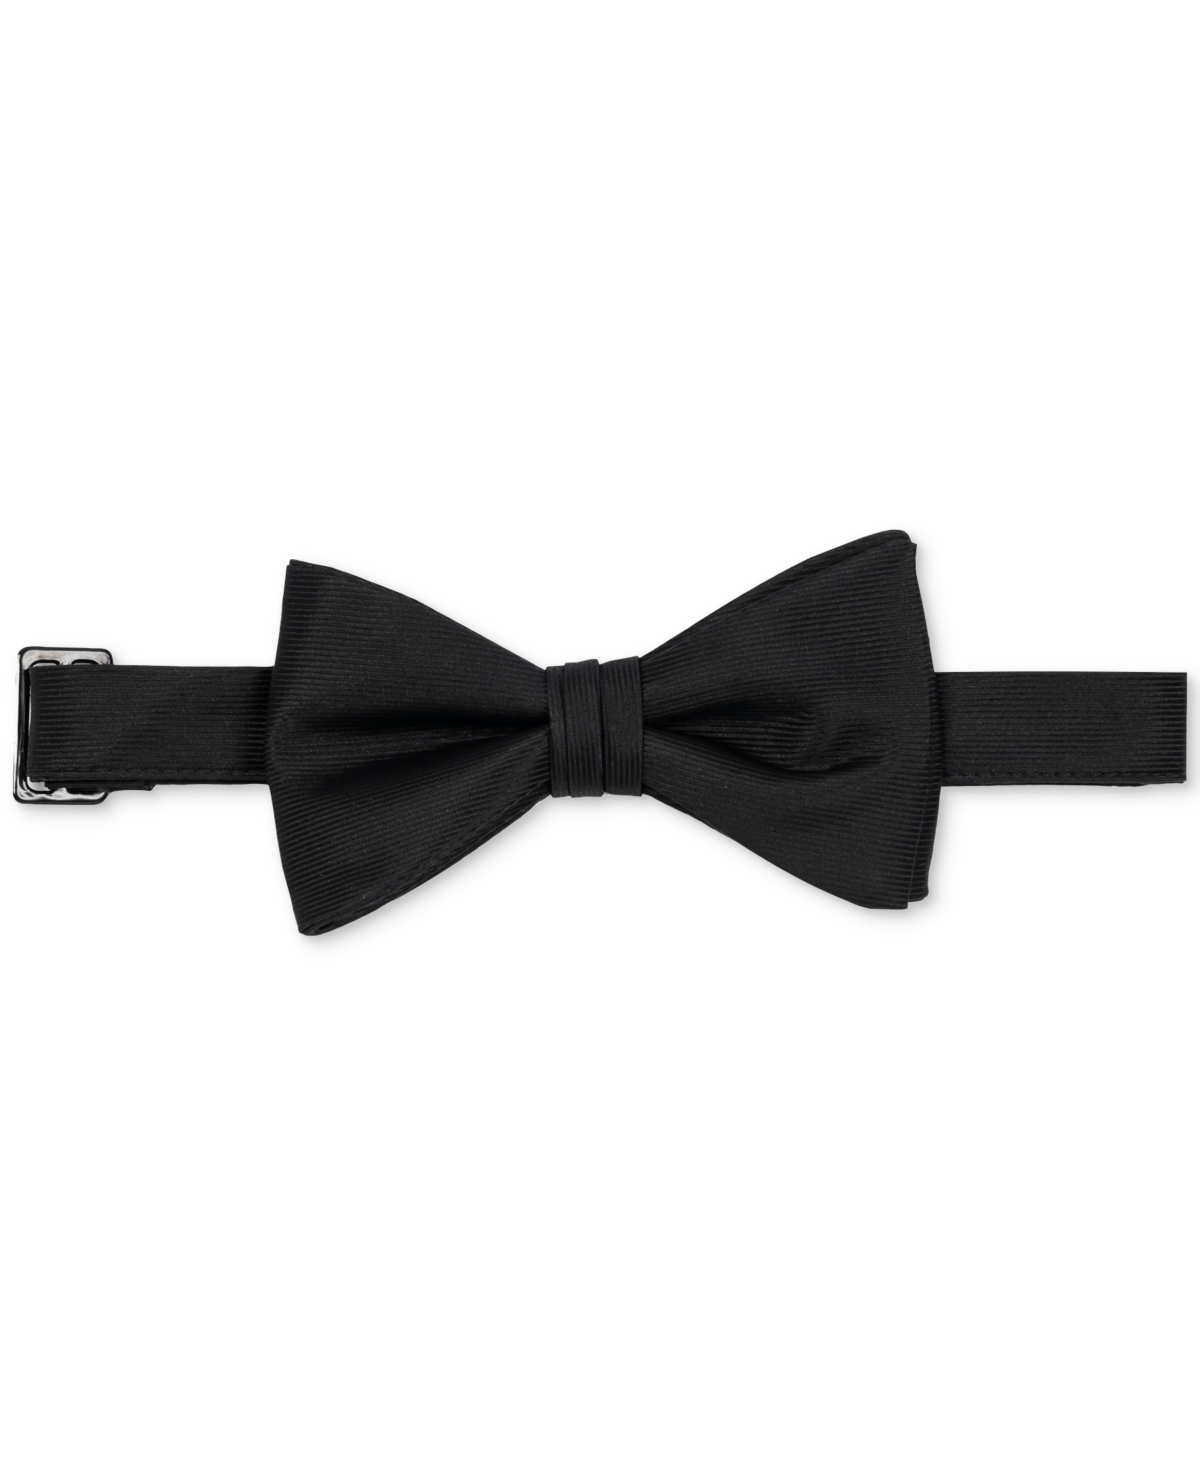 Men's Solid Black Pre-Tied Bow Tie - Black